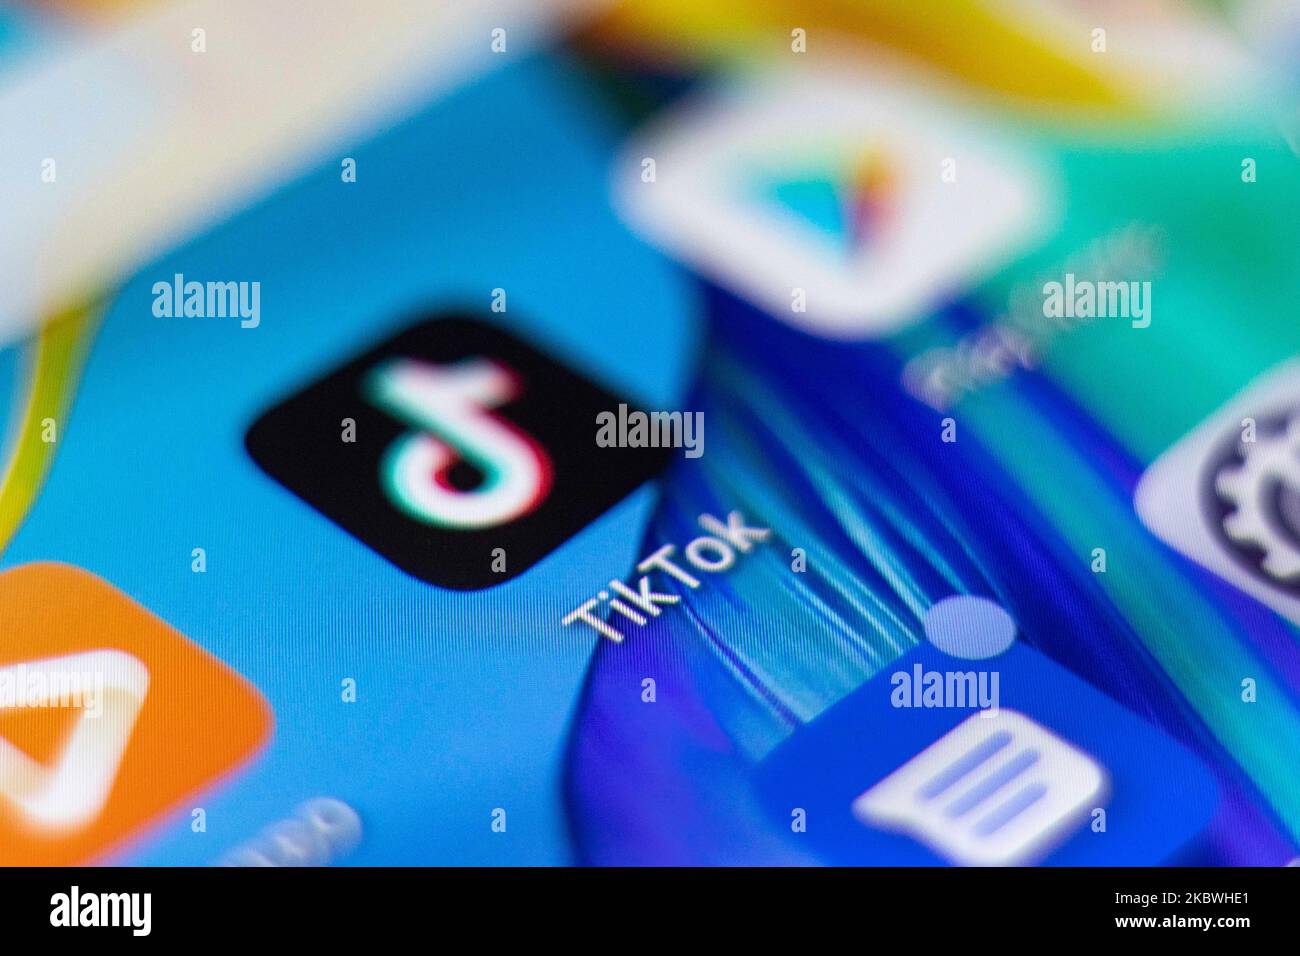 Das TikTok-Nahaufnahme-Logo, das auf einem Telefonbildschirm, auf einem Smartphone und einer Tastatur angezeigt wird, ist in dieser Abbildung mit mehreren Belichtungen zu sehen. TIK Tok ist ein chinesischer Social-Networking-Service, der sich im Besitz des in Peking ansässigen Internet-Technologie-Unternehmens Bytedance befindet. Es wird verwendet, um kurze Tanz-, Lip-Sync-, Comedy- und Talentvideos zu erstellen. Bytedance startete die TikTok App für iOS und Android im Jahr 2017 und Anfang September 2016 Douyin auf dem Markt in China. Im Oktober 2018 wurde TikTok zur am häufigsten heruntergeladenen App in den USA. Präsident der USA Donald Trump droht und plant, das beliebte Video-Sharing zu verbieten Stockfoto